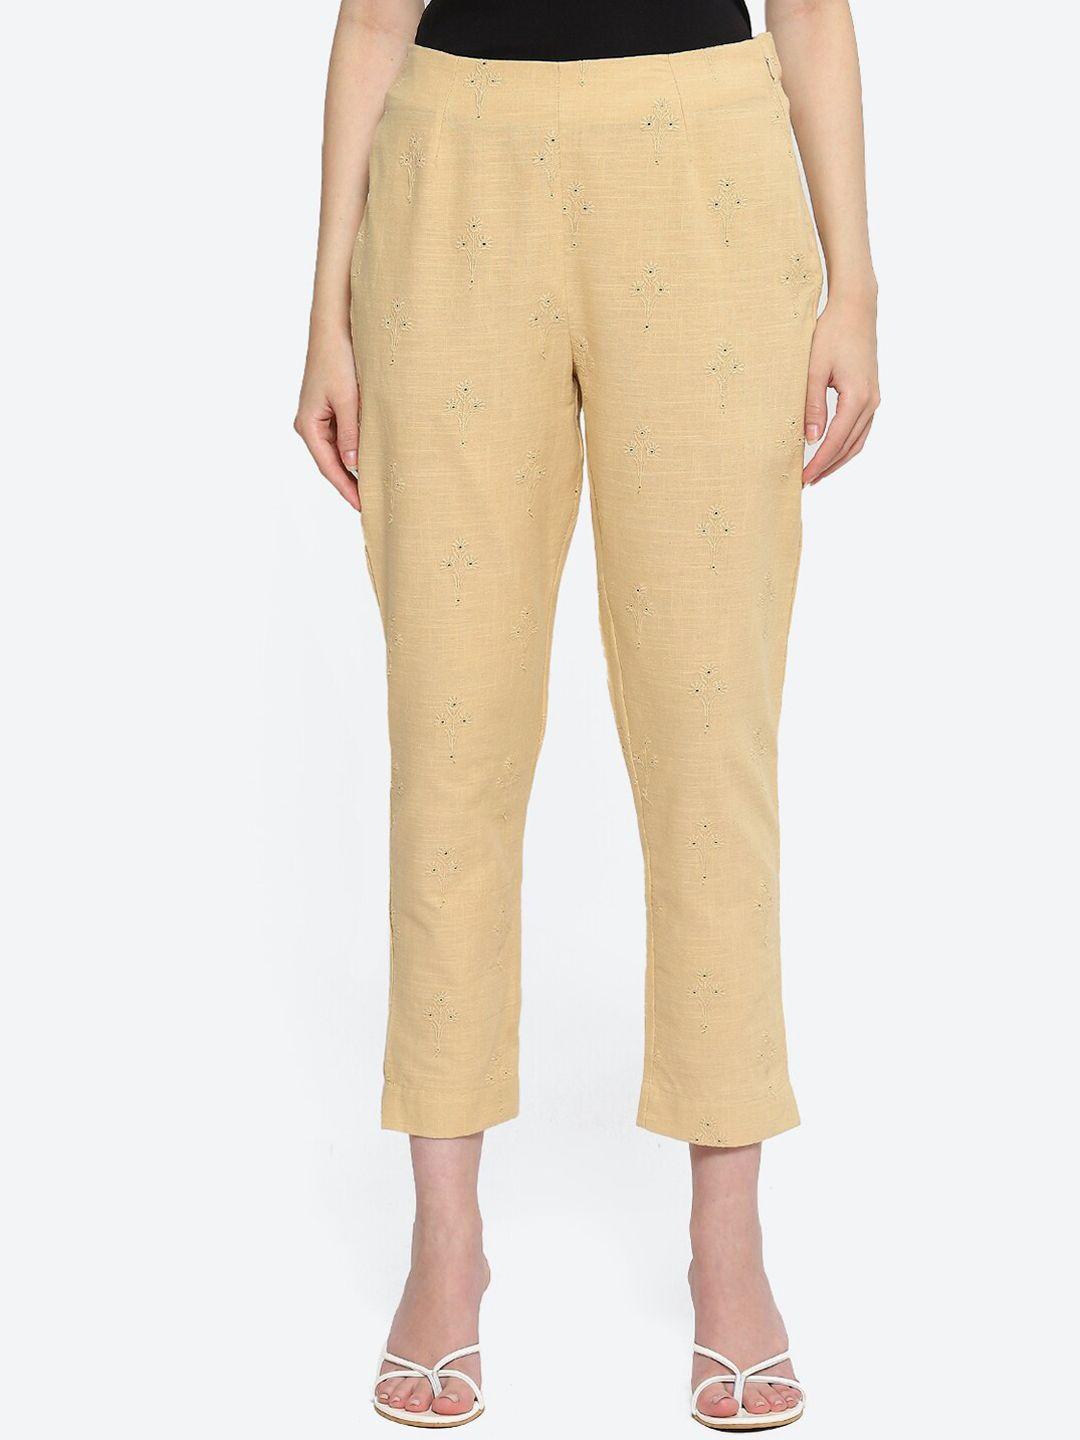 biba women ethnic motif schifilli cropped trousers